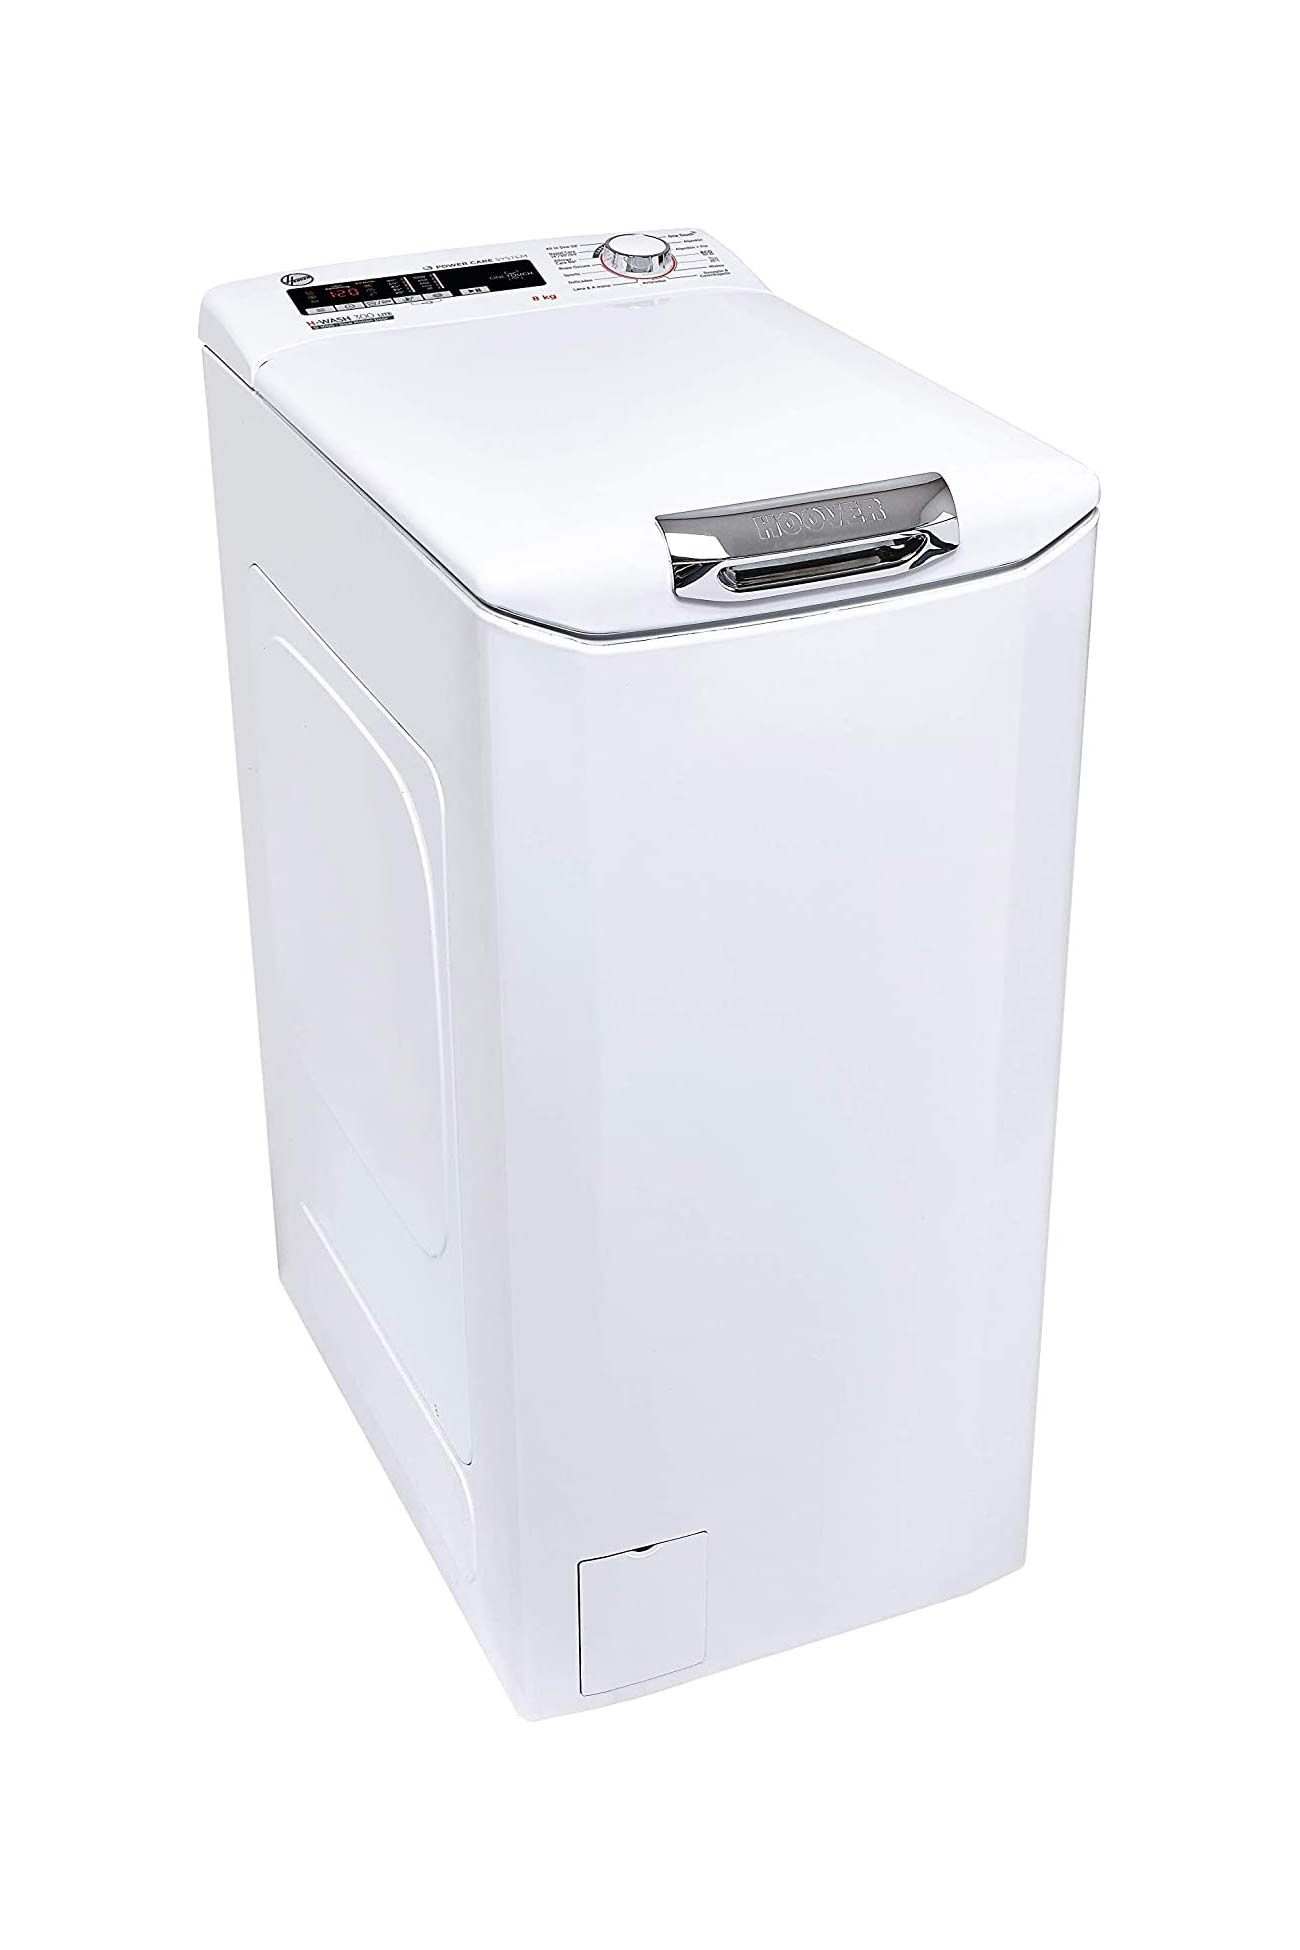 8 Lavadoras y secadoras pequeñas que te puedes comprar